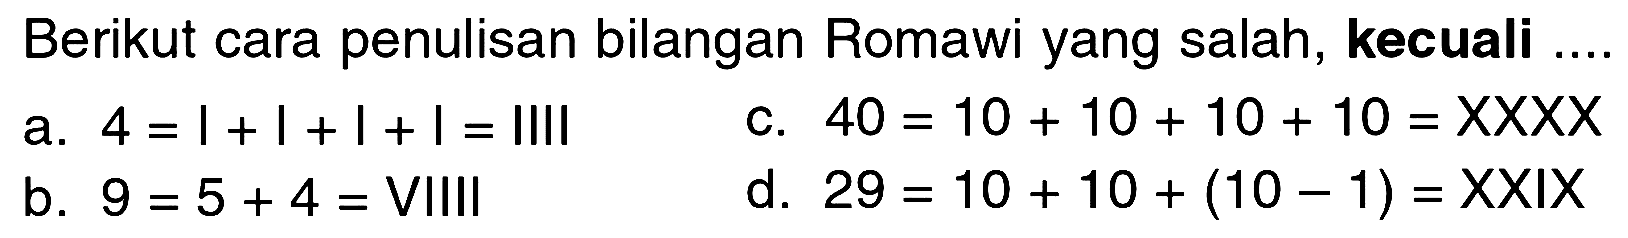 Berikut cara penulisan bilangan Romawi yang salah, kecuali ....
a.  4 = I+I+I+I=IIII 
c.  40=10+10+10+10=XXXX 
b.  9=5+4=  VIIII
d.  29=10+10+(10-1)=XXIX 